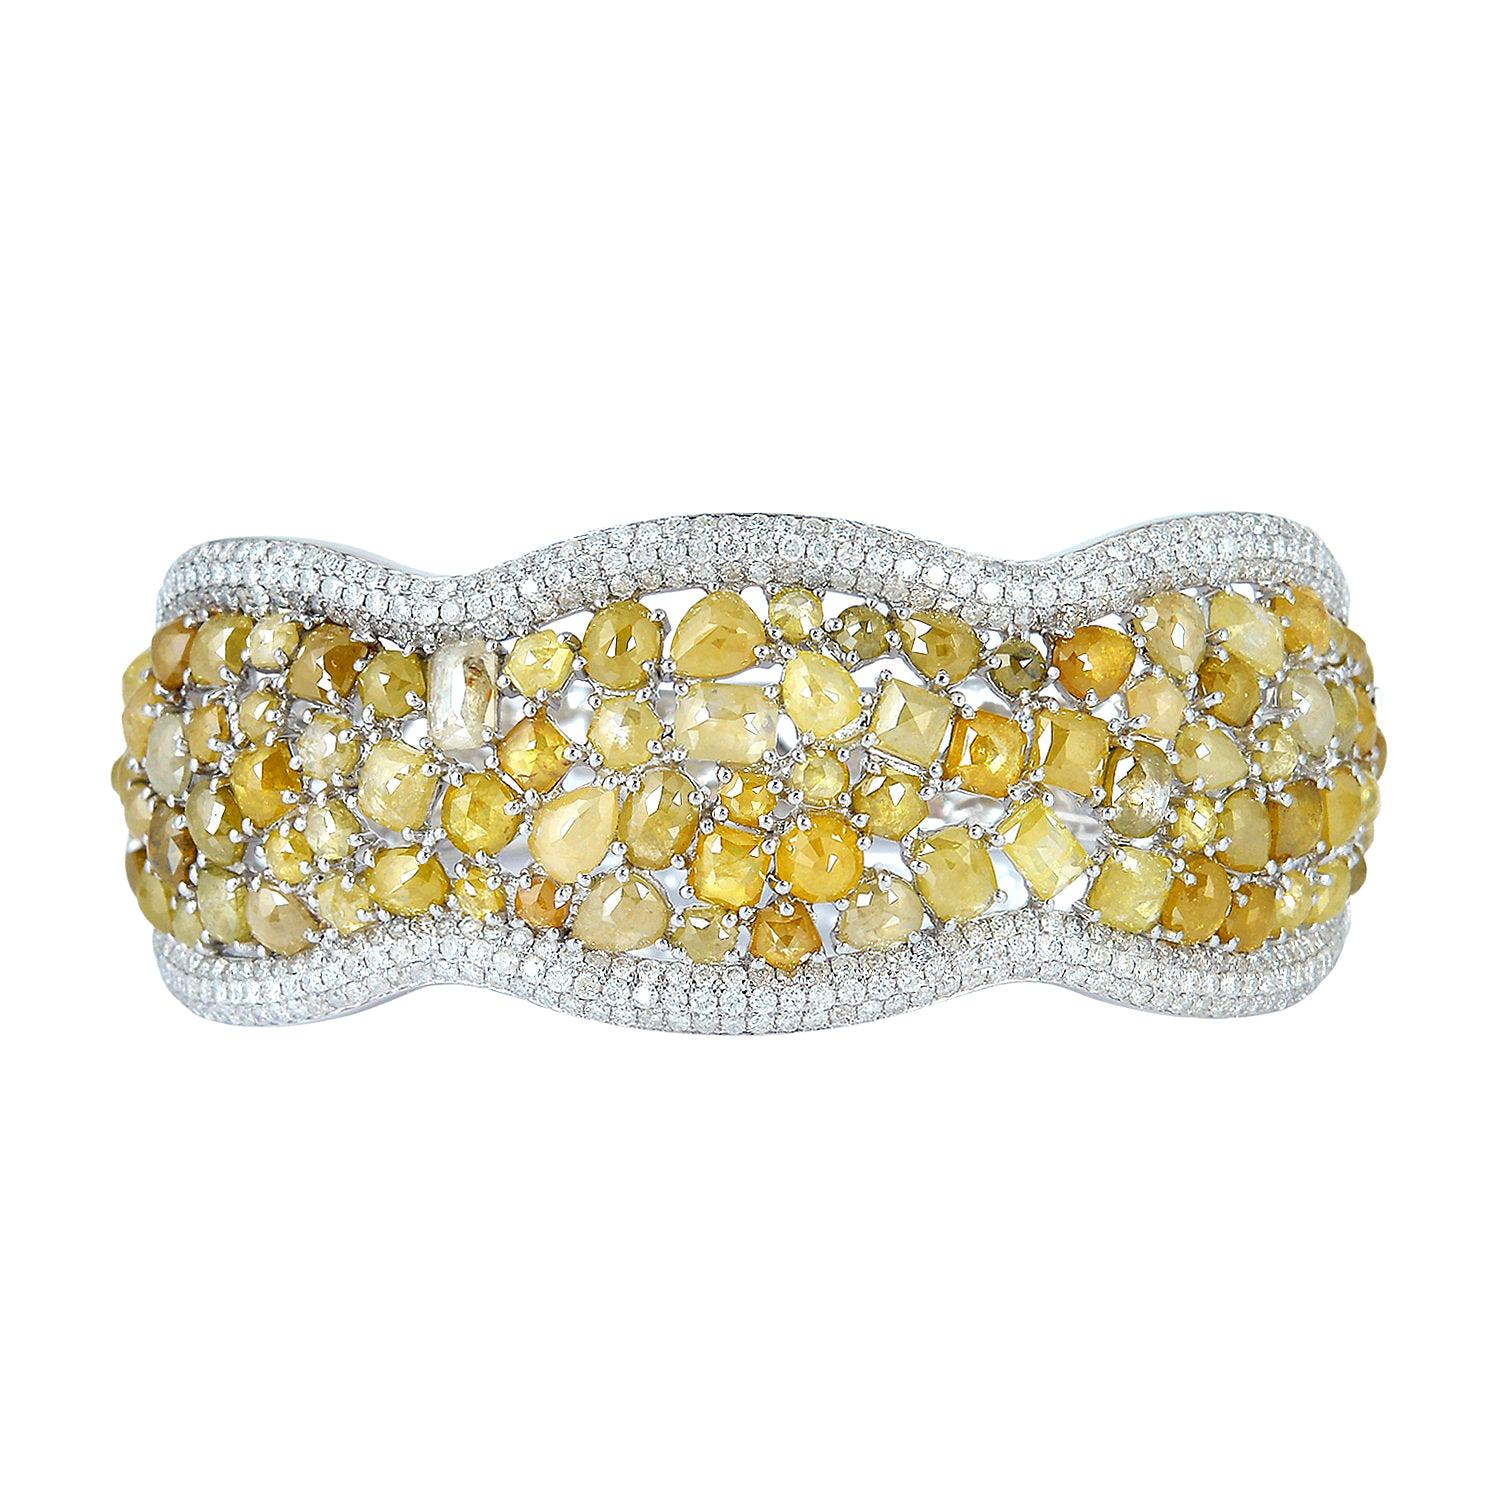 Yellow Ice Diamond and White Diamond Bangle Set in 18K White Gold